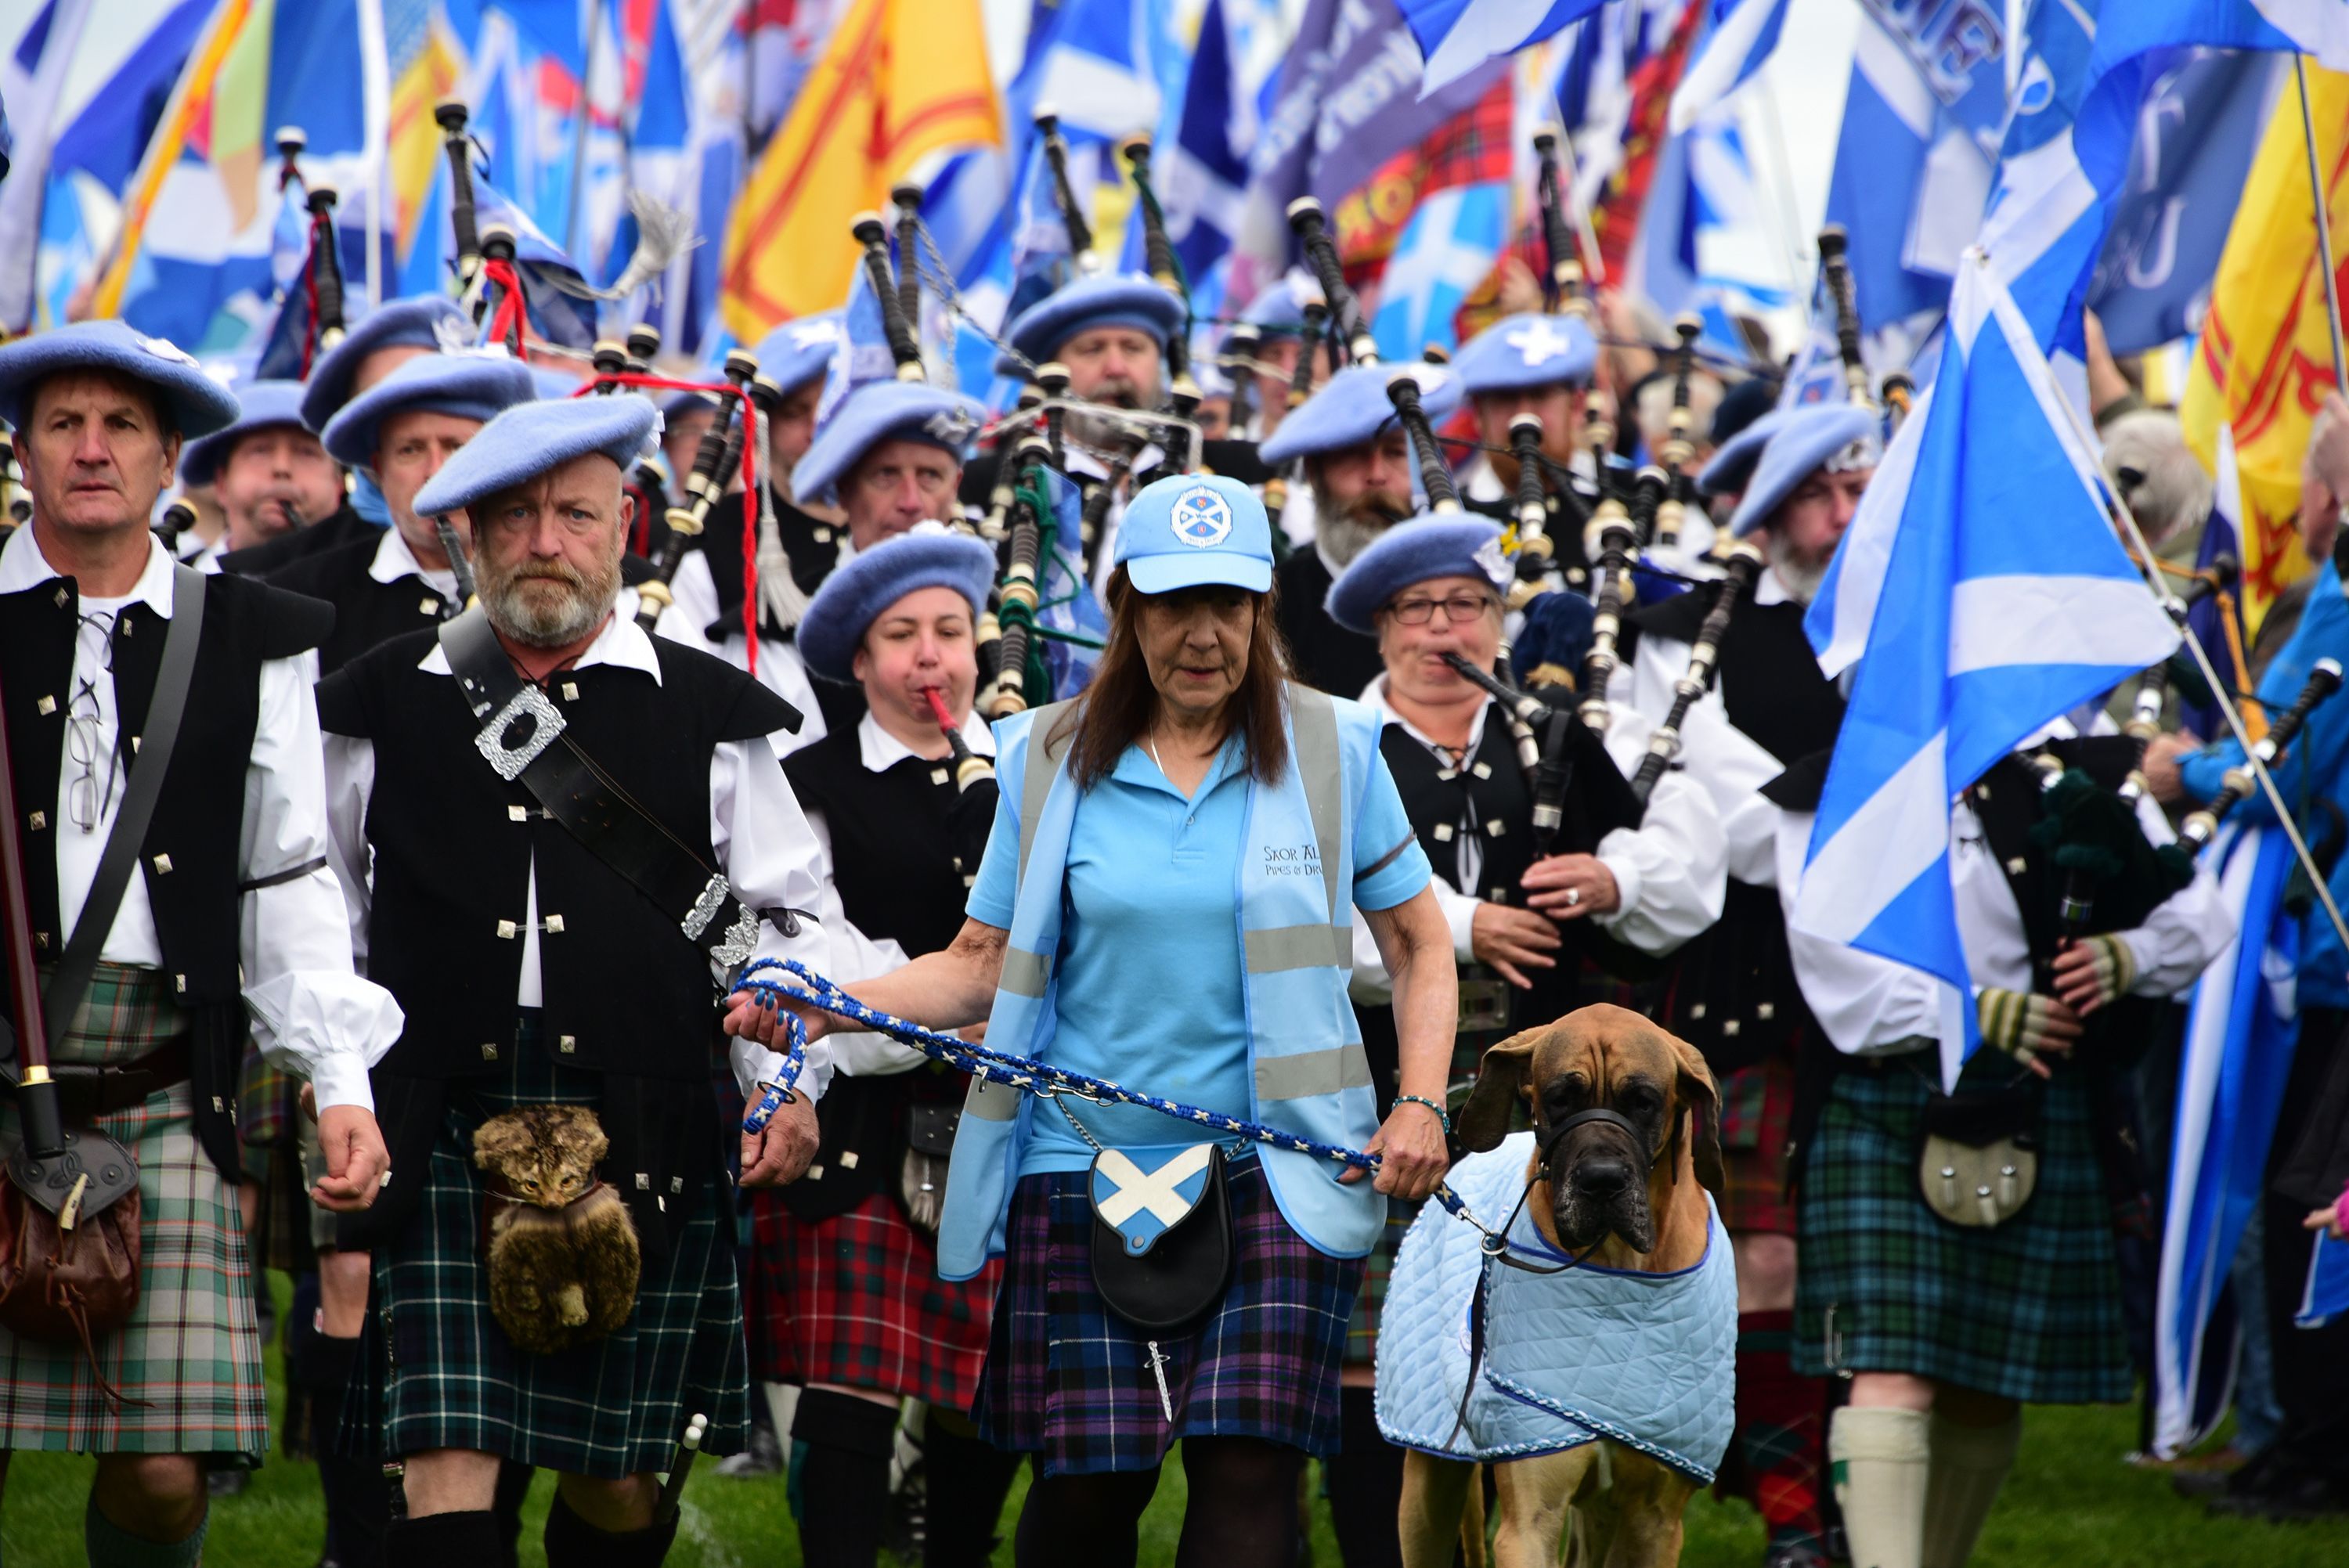 Шотландия требует независимости: фото и видео масштабного митинга